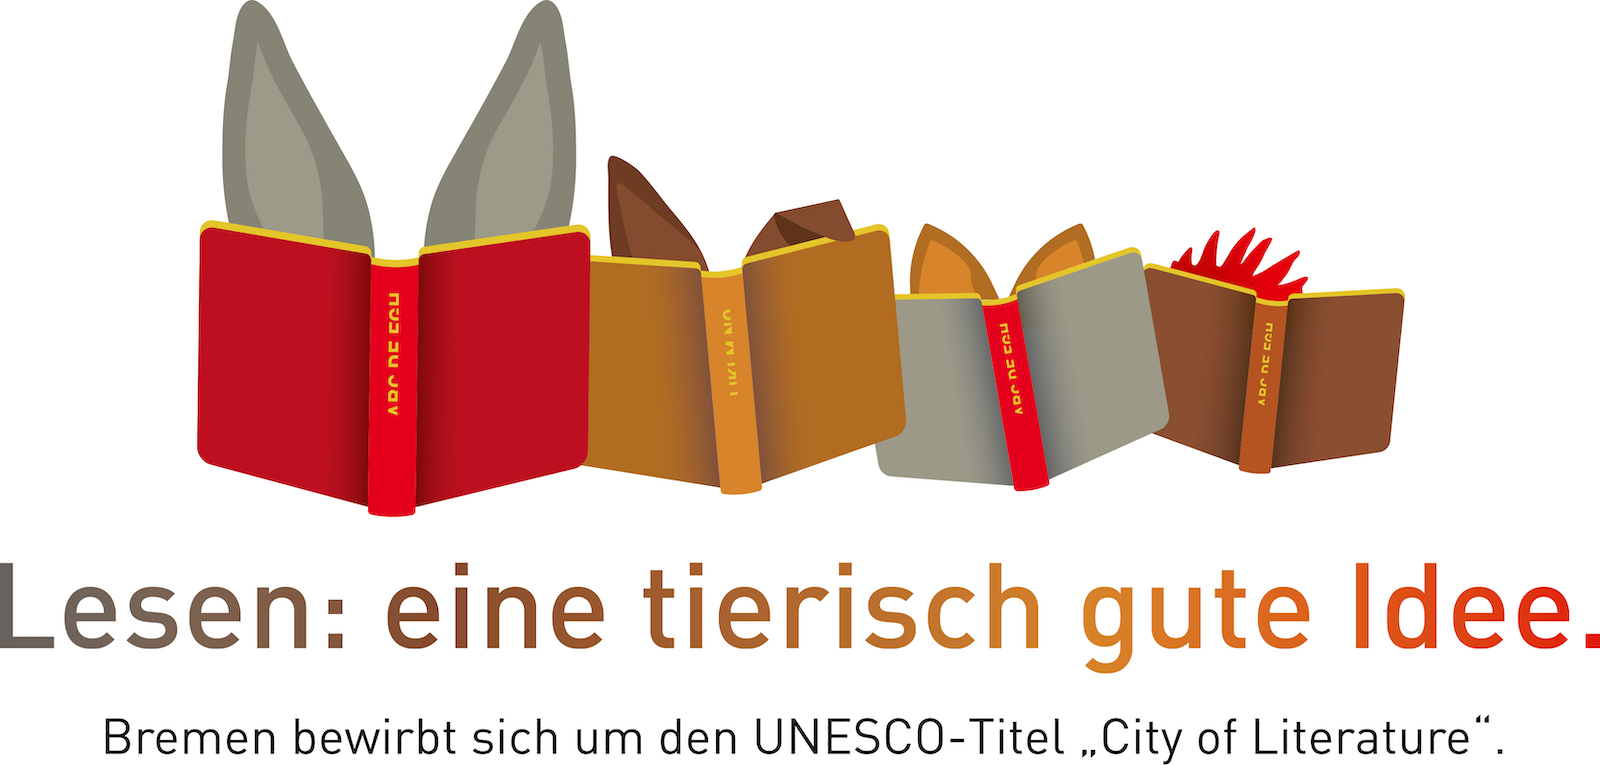 Logo zur Bremer Bewerbung als "City of Literature", Bild von lesenden Stadtmusikanten